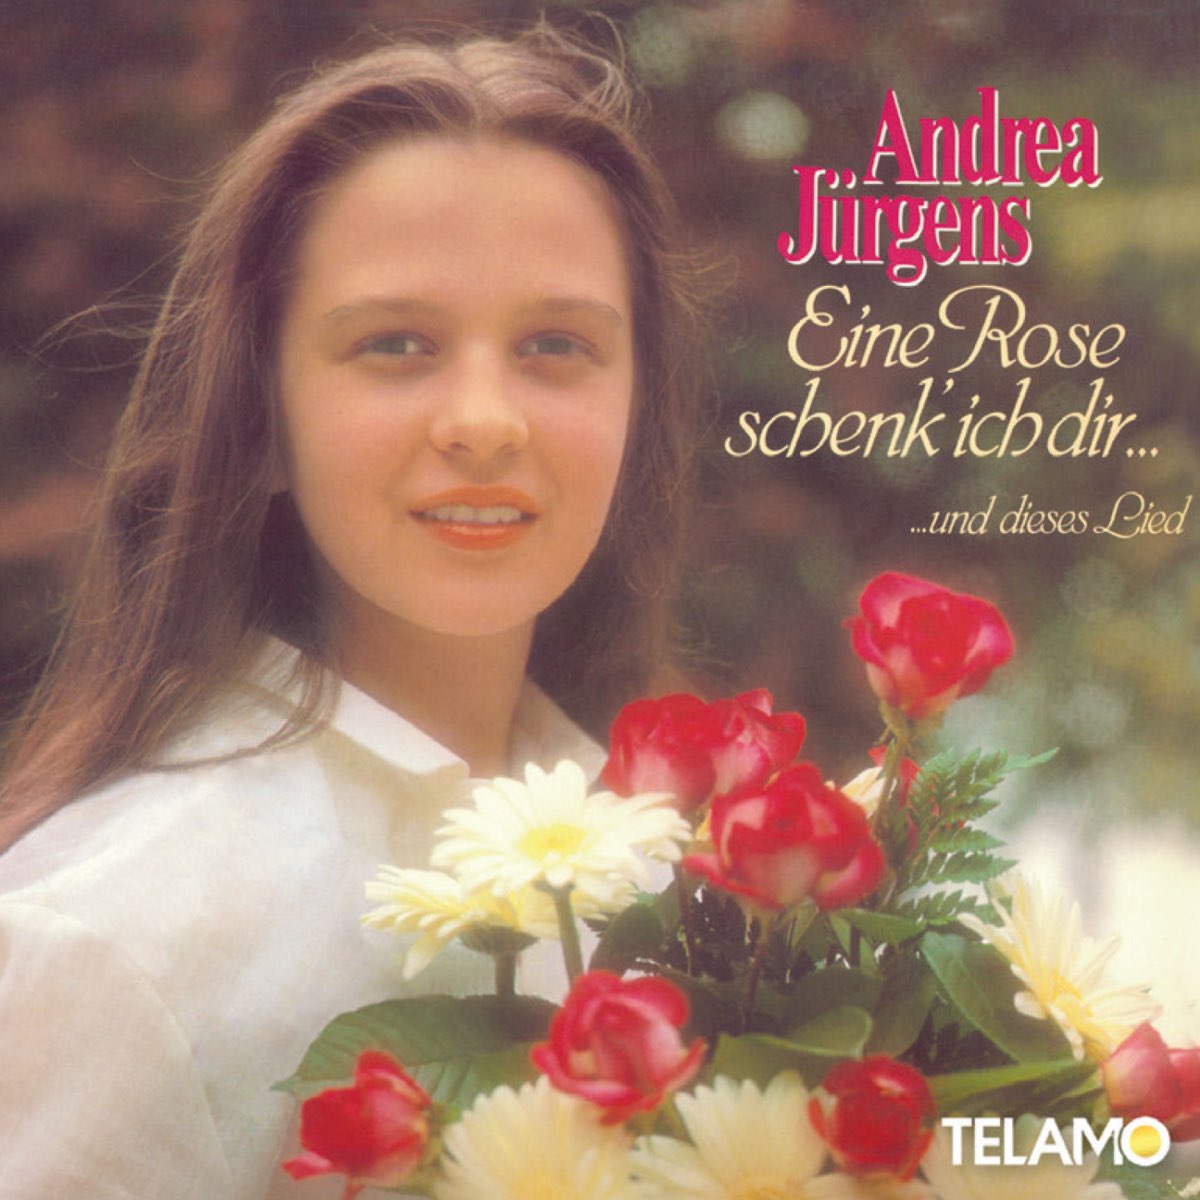 Eine Rose schenk ich dir... und dieses Lied by Andrea Jürgens on Apple Music